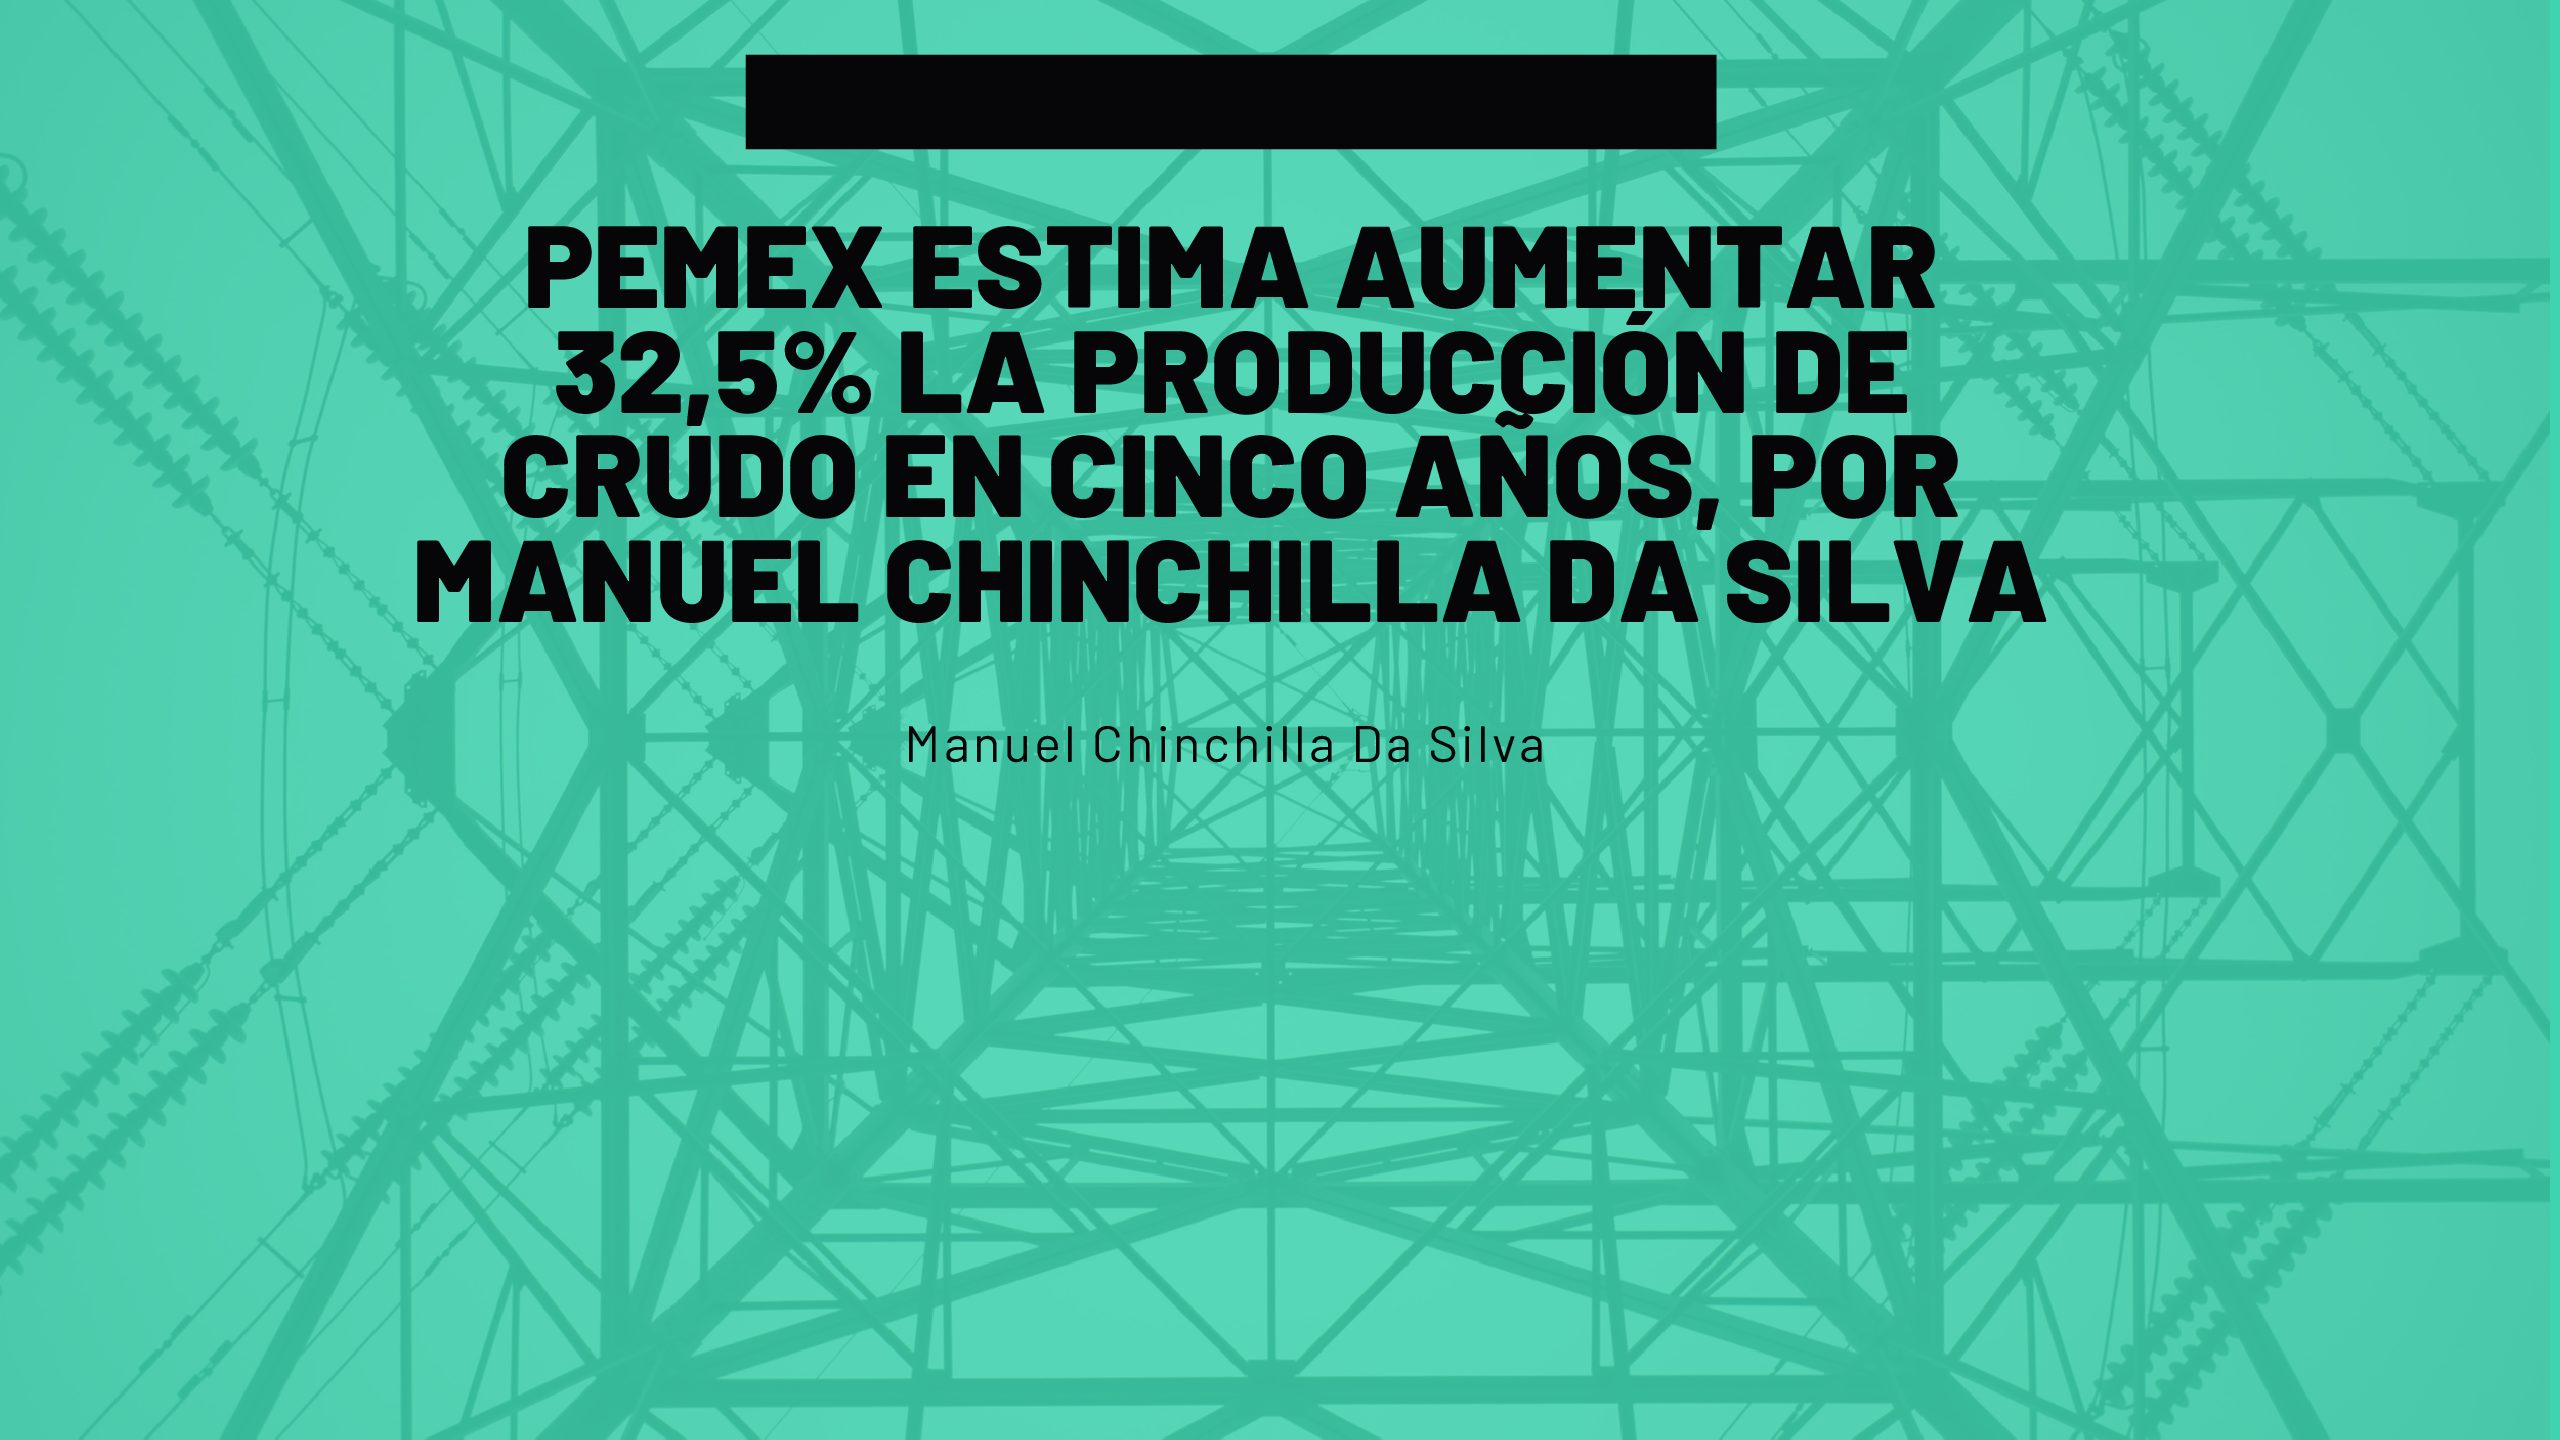 Pemex estima aumentar 32,5% la producción de crudo en cinco años, por Manuel Chinchilla Da Silva